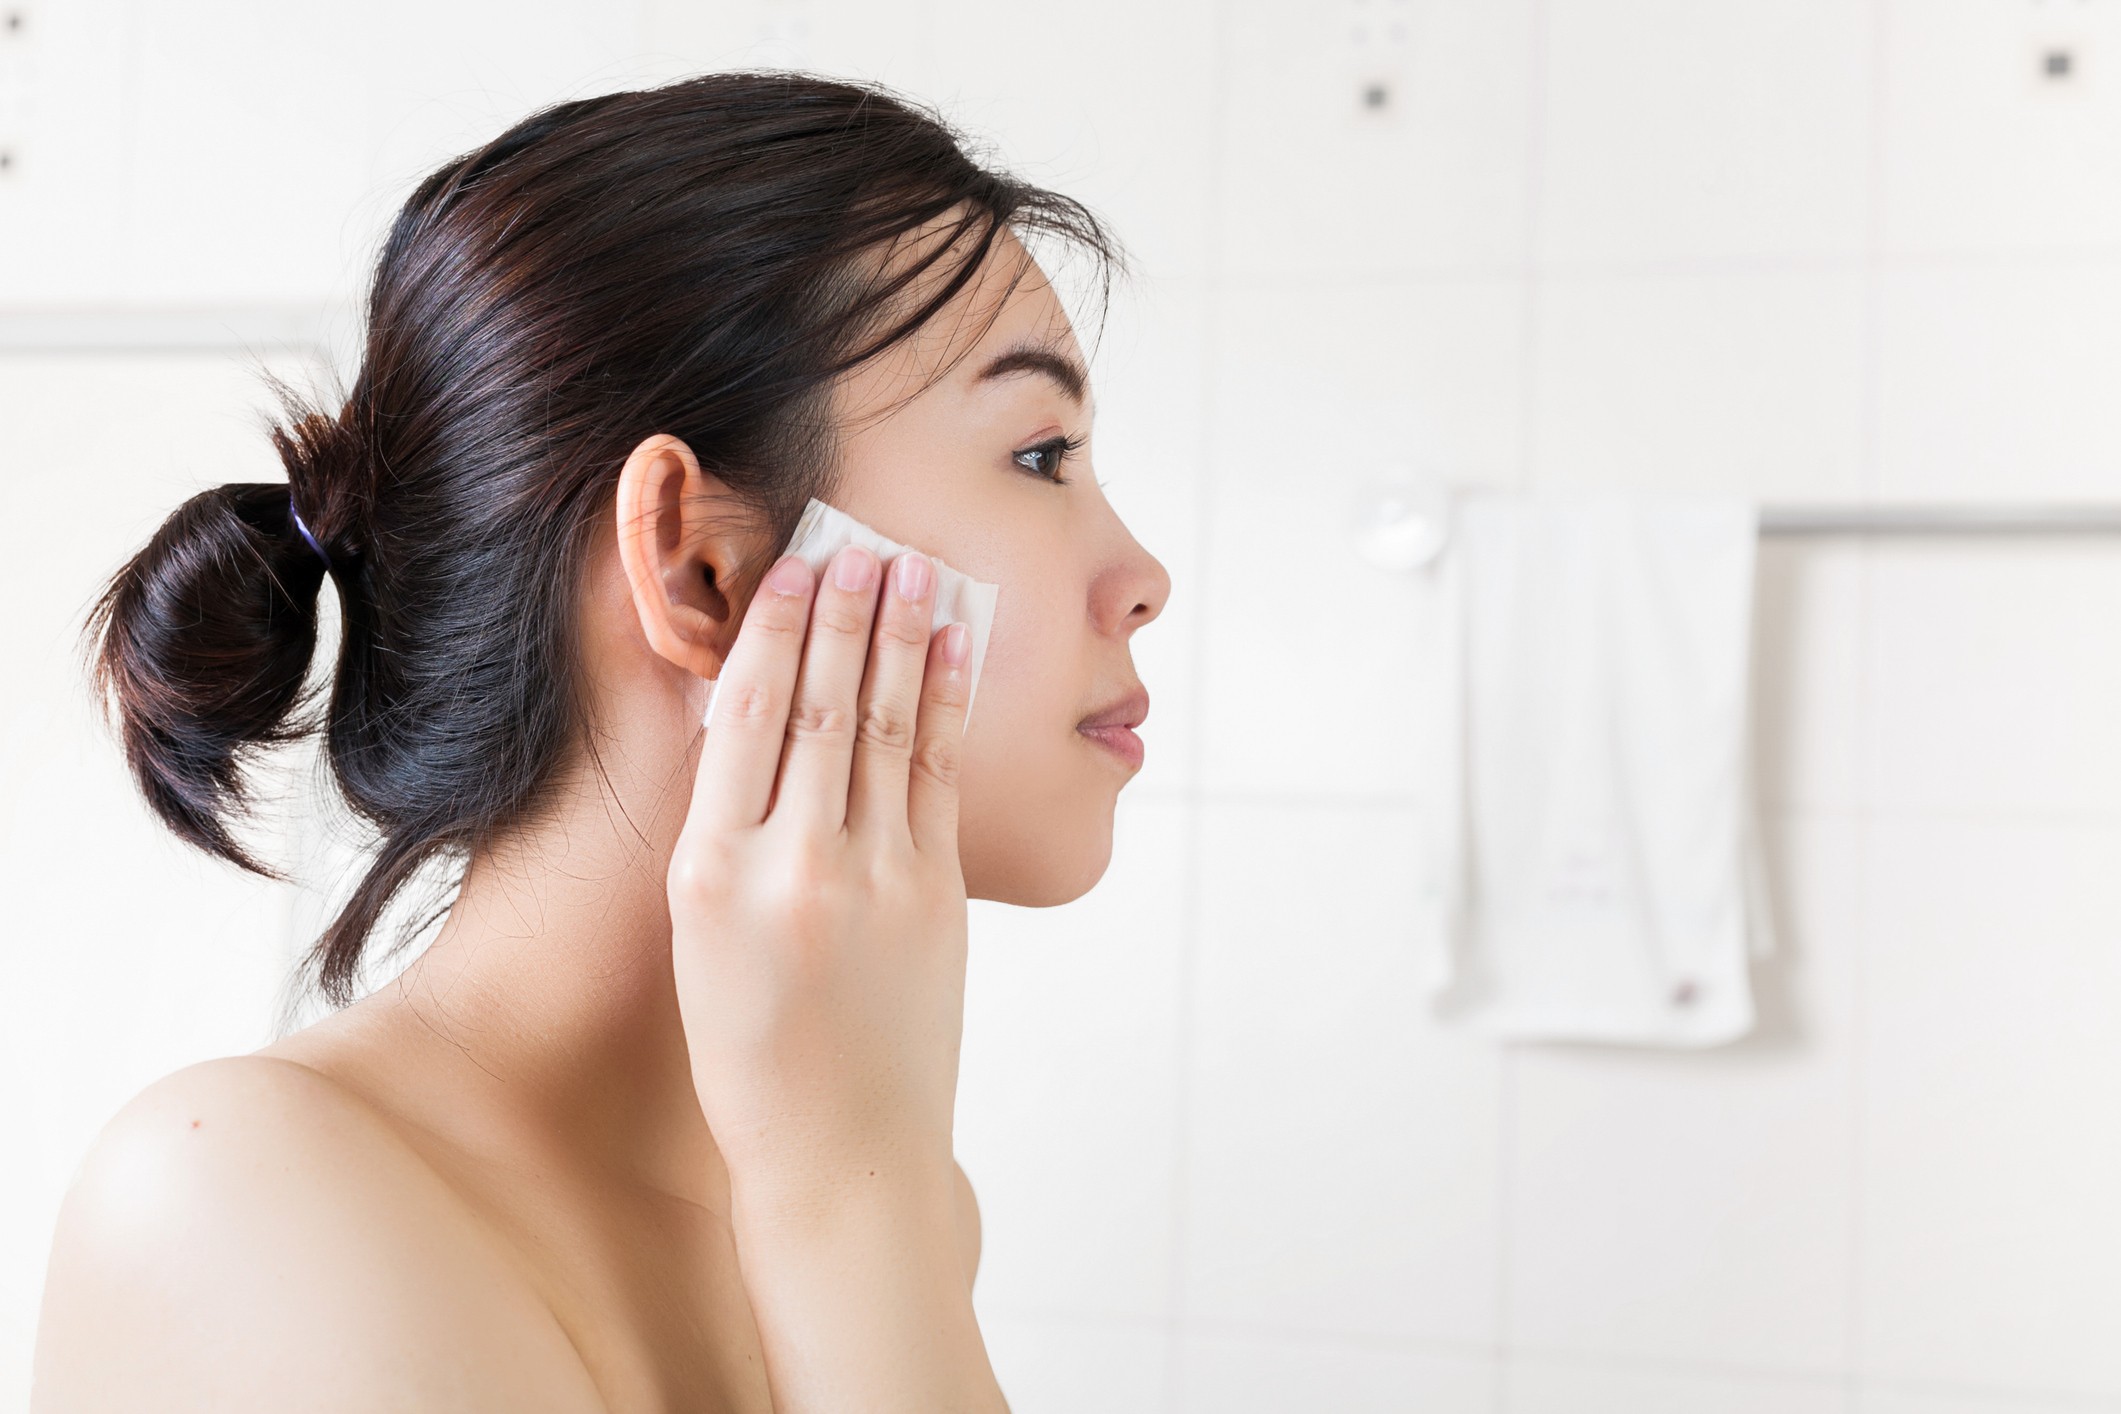 O tônico facial equilibra o pH da pele (Foto: Getty Images)